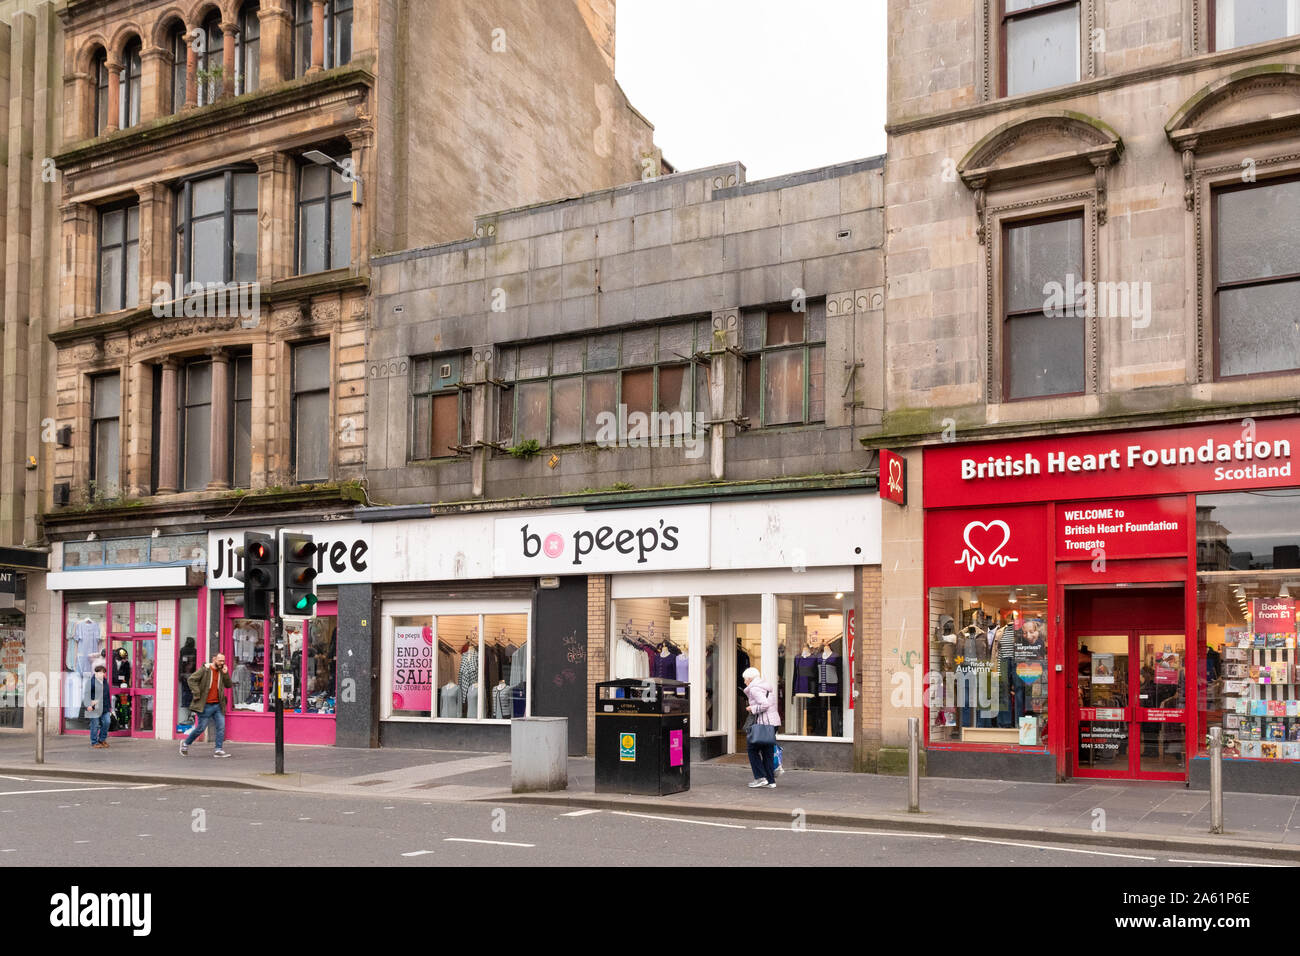 Bâtiment art déco sur les bâtiments à risque s'inscrire sur, Glasgow, Écosse Trongate Banque D'Images